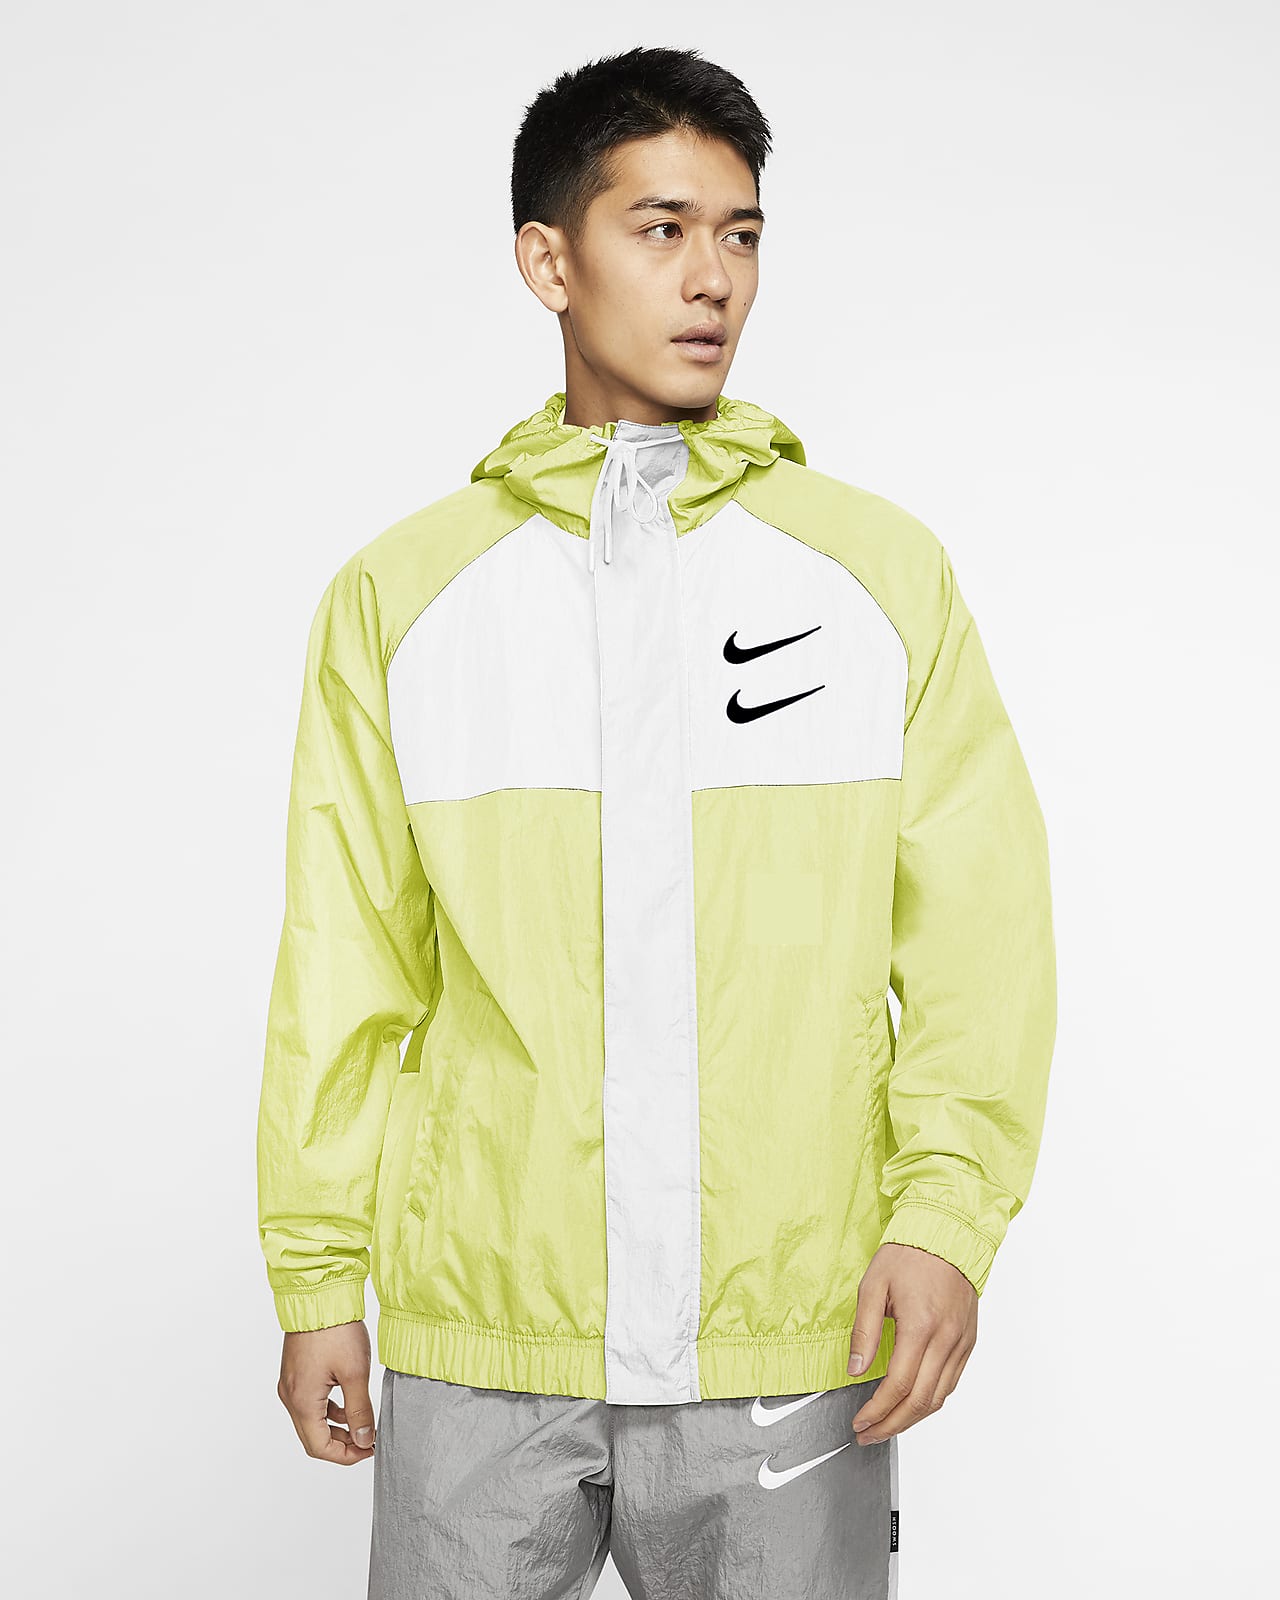 Download Nike Sportswear Swoosh Men's Woven Hooded Jacket. Nike.com